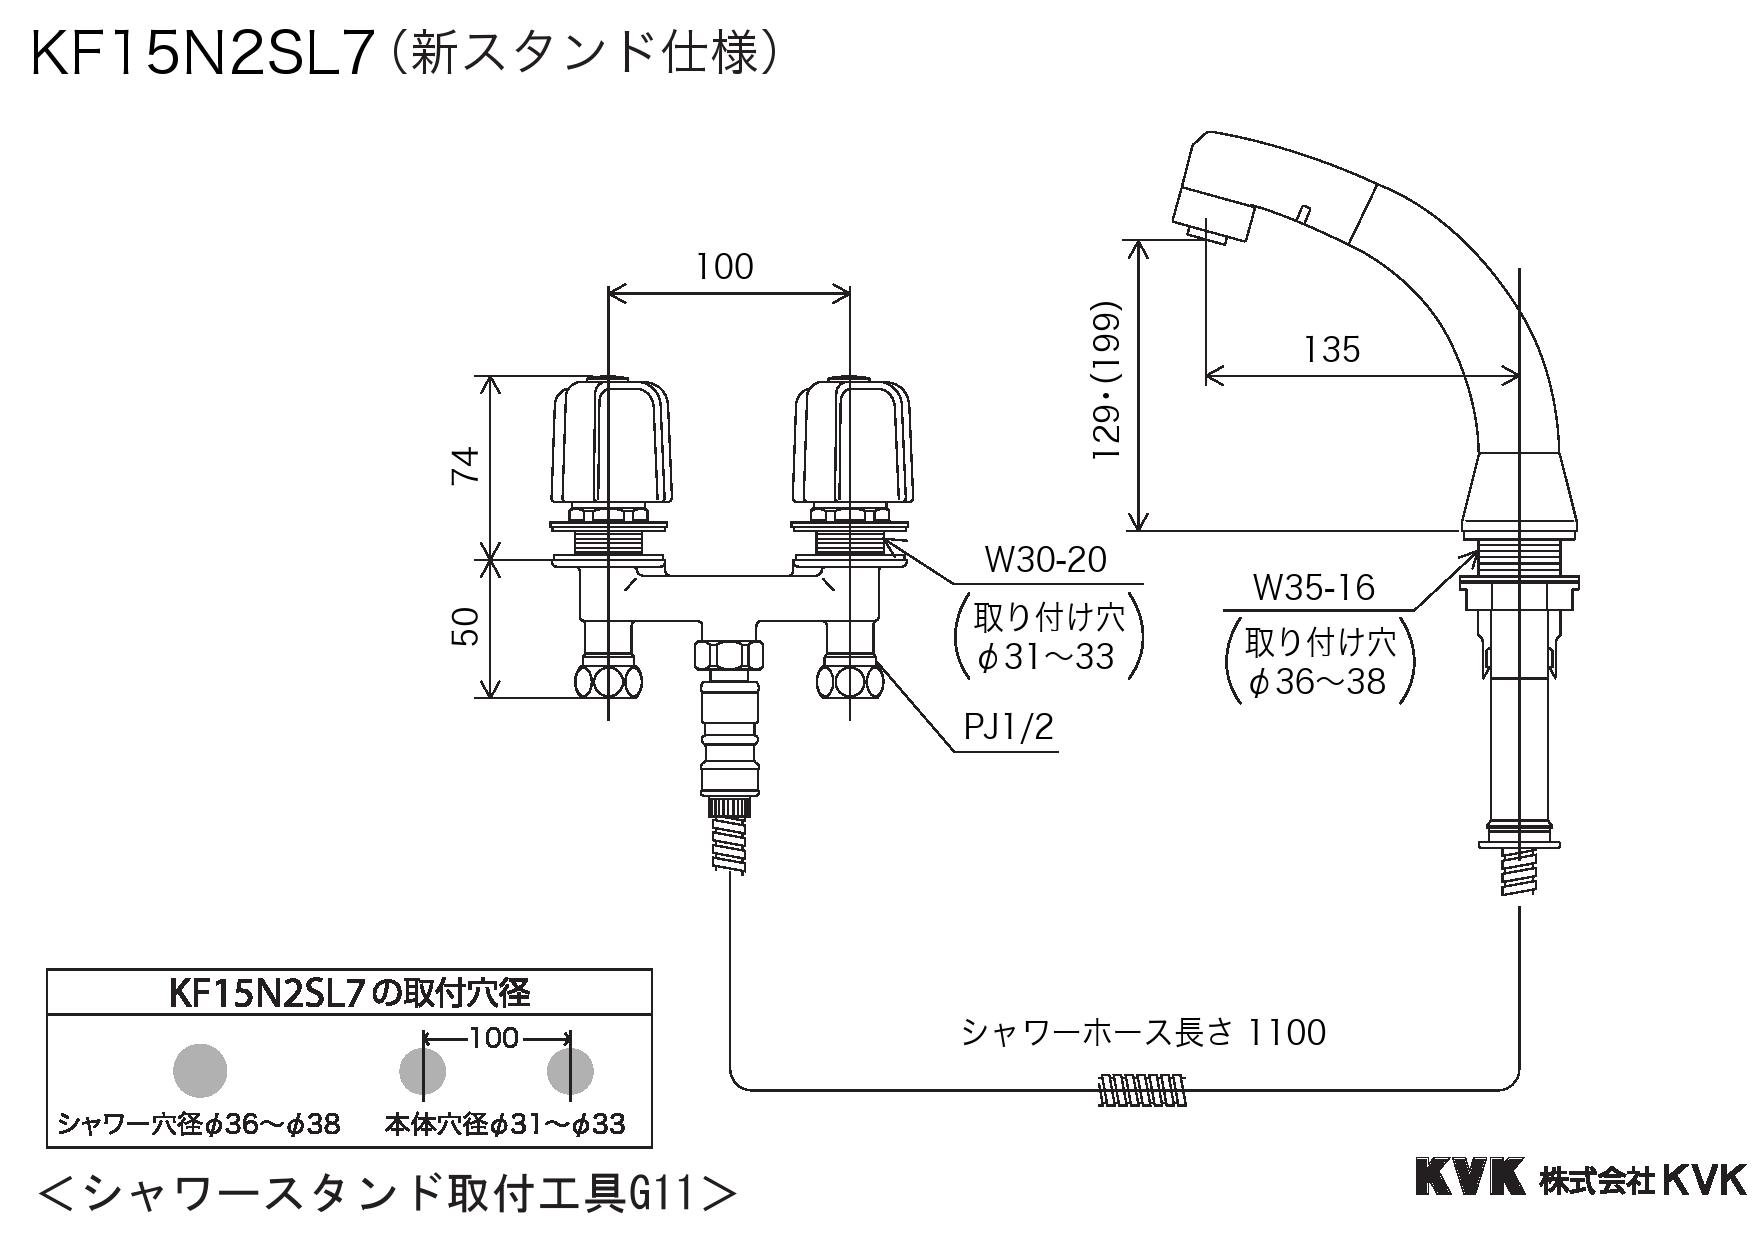 特別オファー KVK 埋込2ハンドル混合栓 3ツ穴2ハンドル水栓の交換用 混合水栓